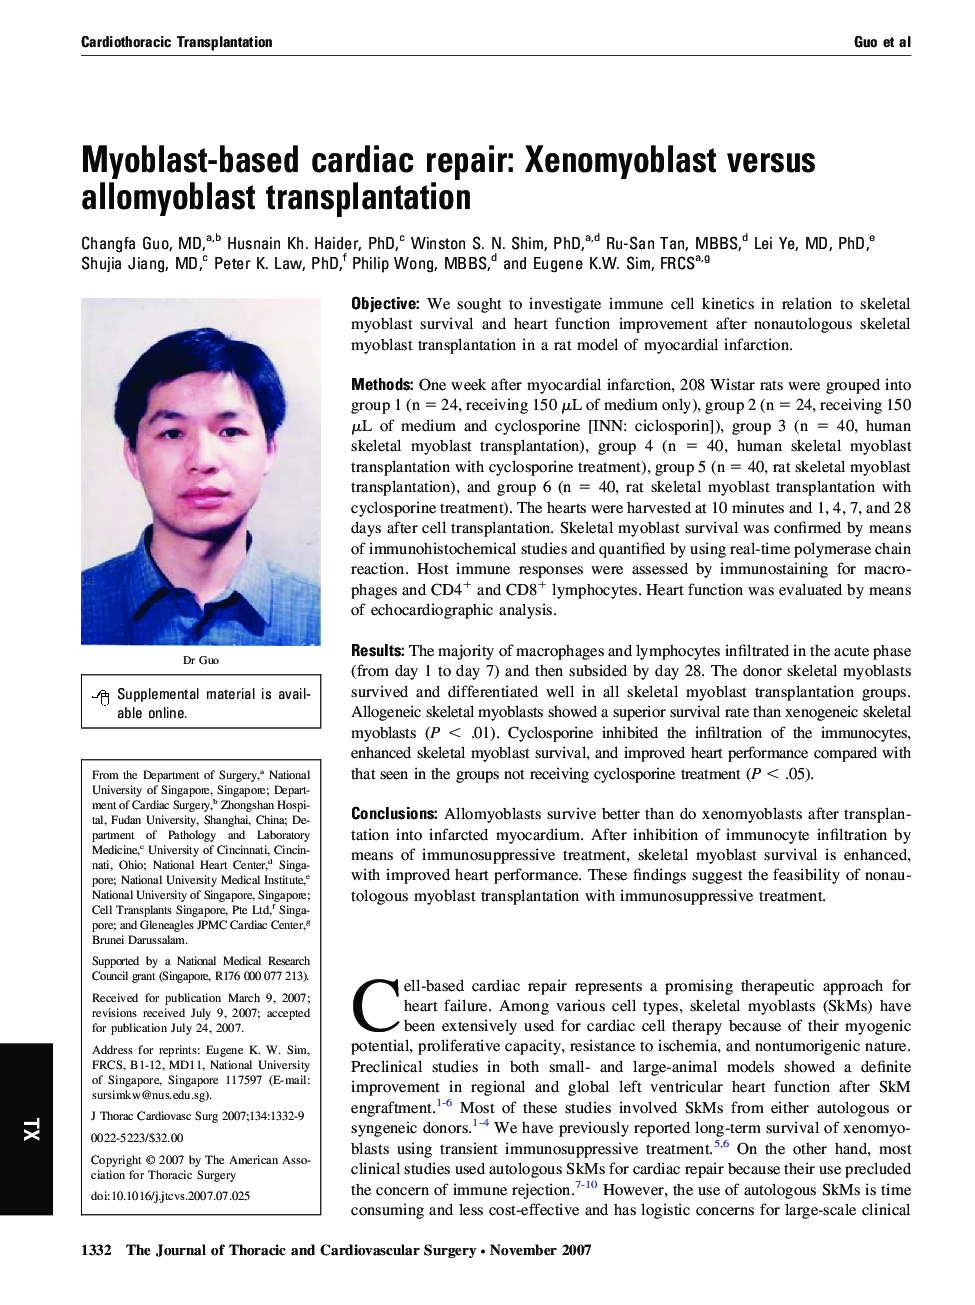 Myoblast-based cardiac repair: Xenomyoblast versus allomyoblast transplantation